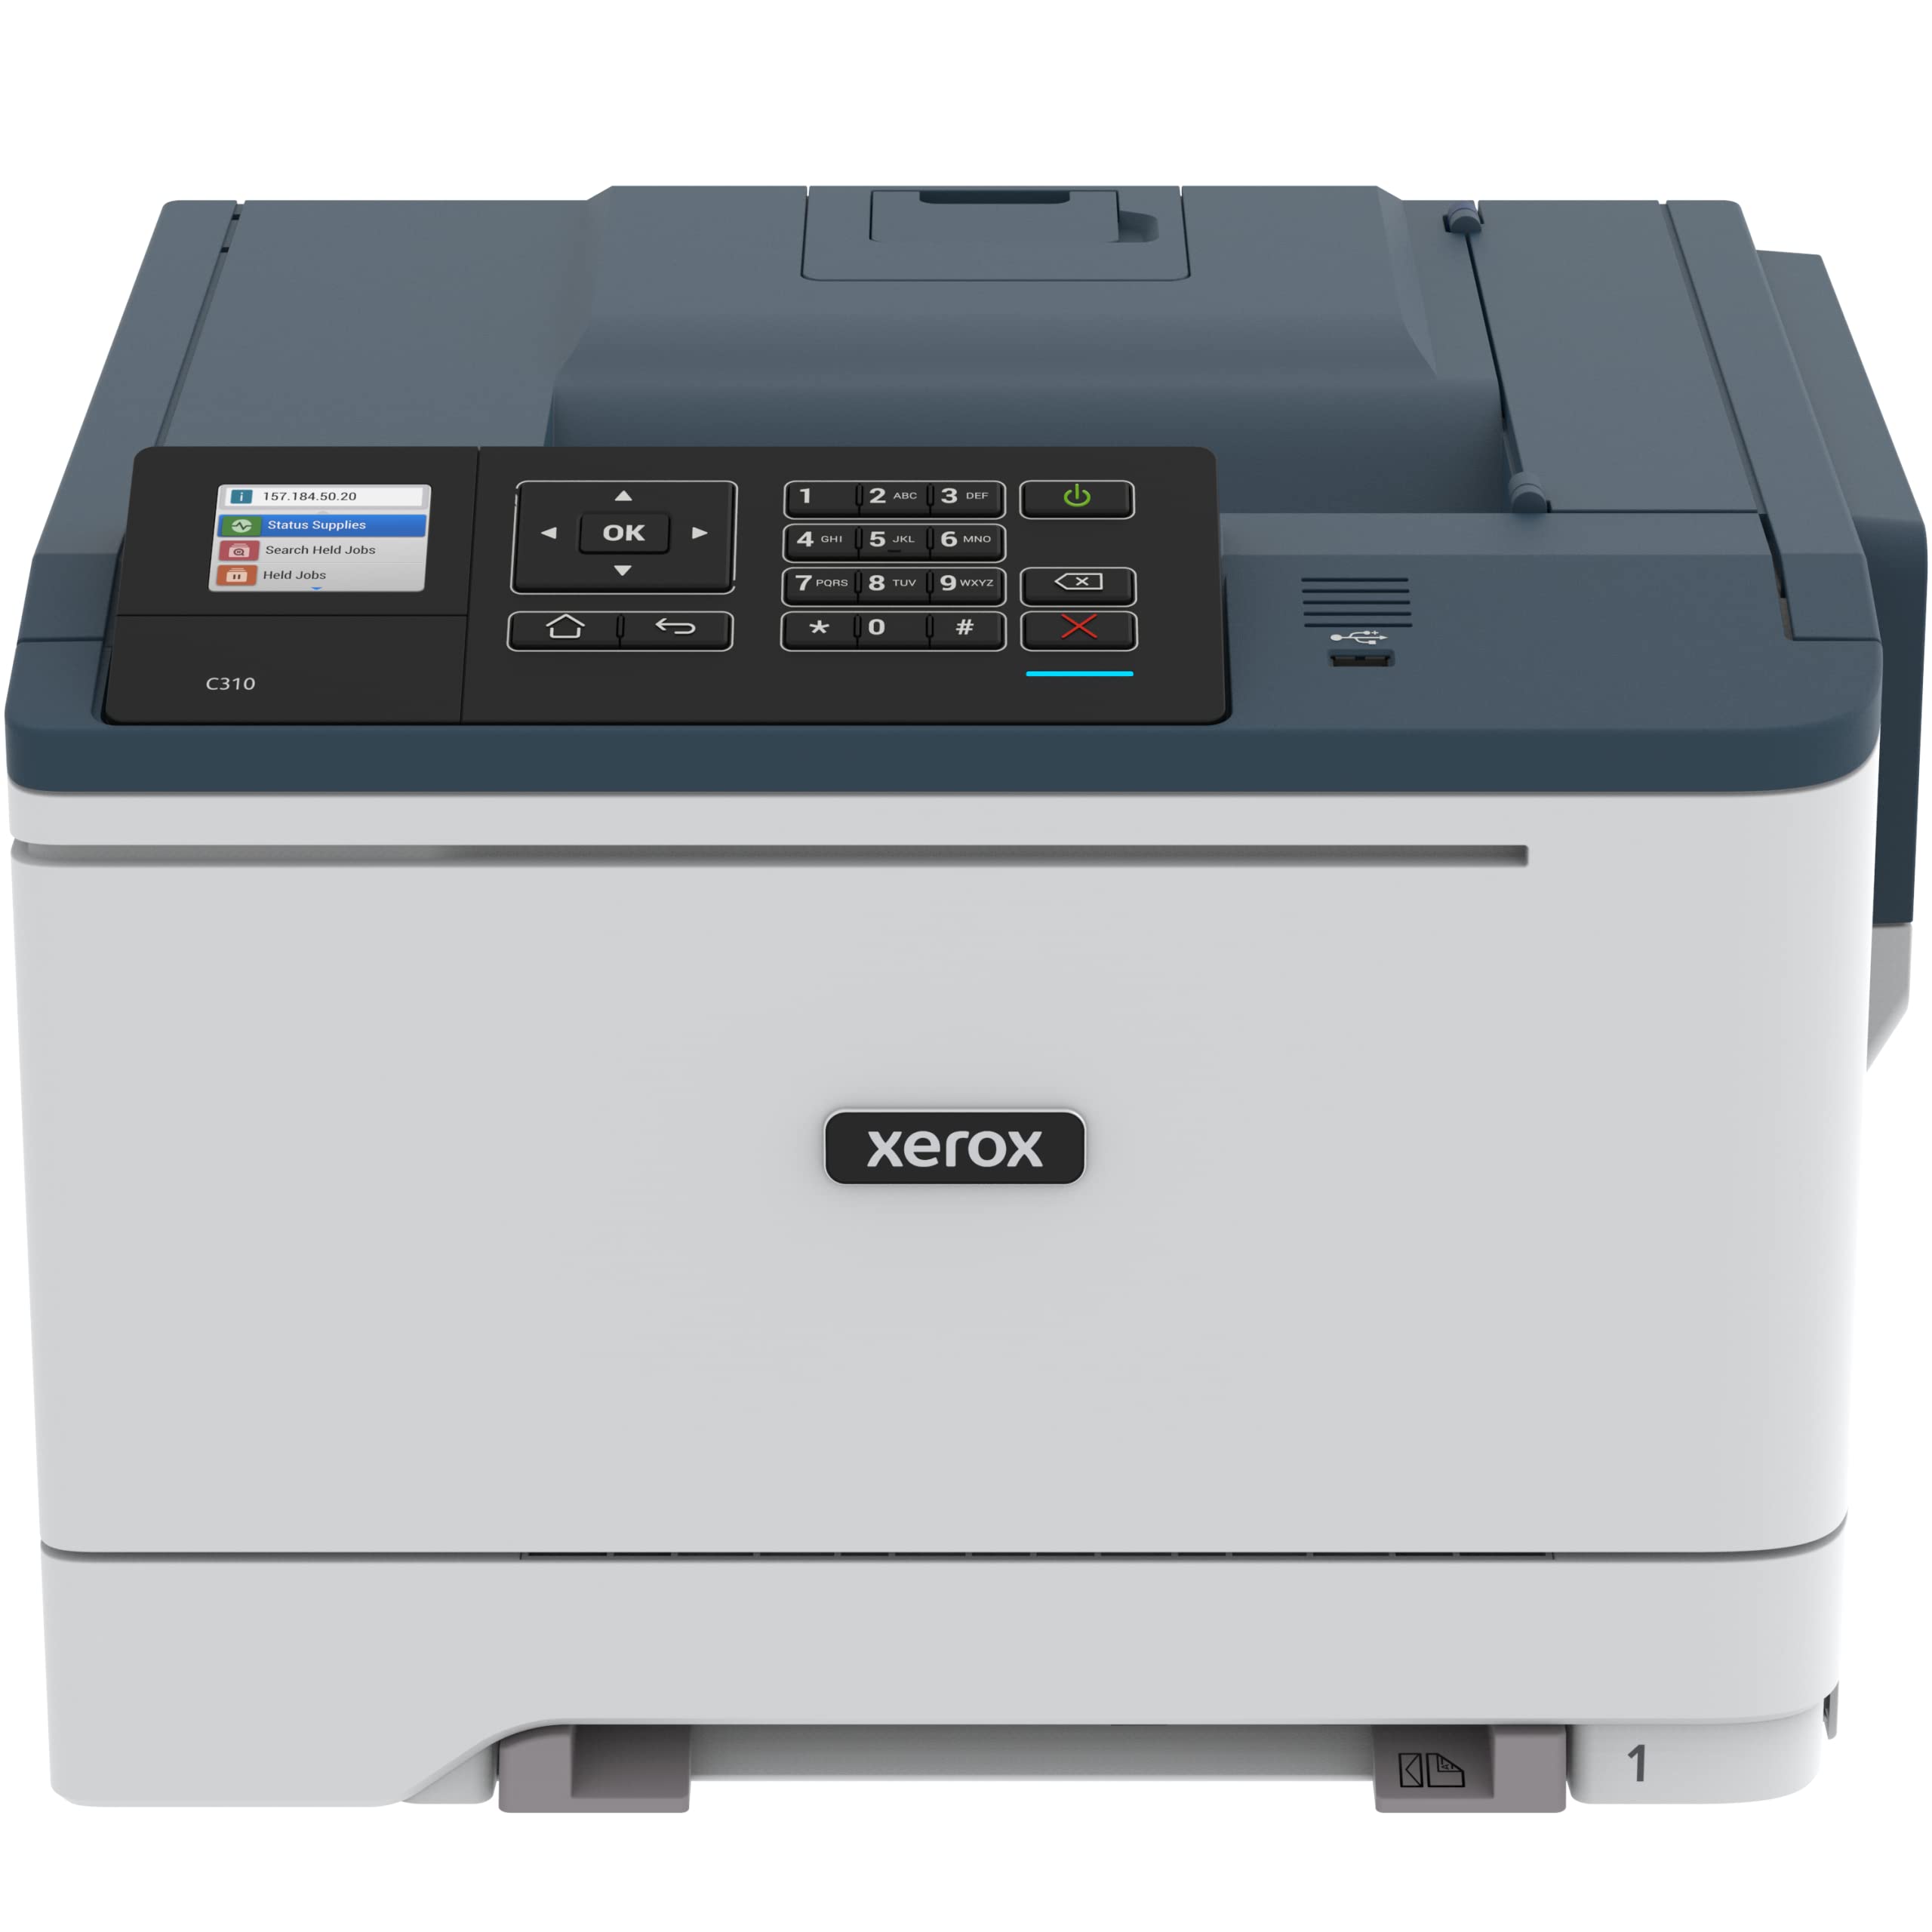 Xerox طابعة ليزر ملونة لاسلكية C310 / DNI